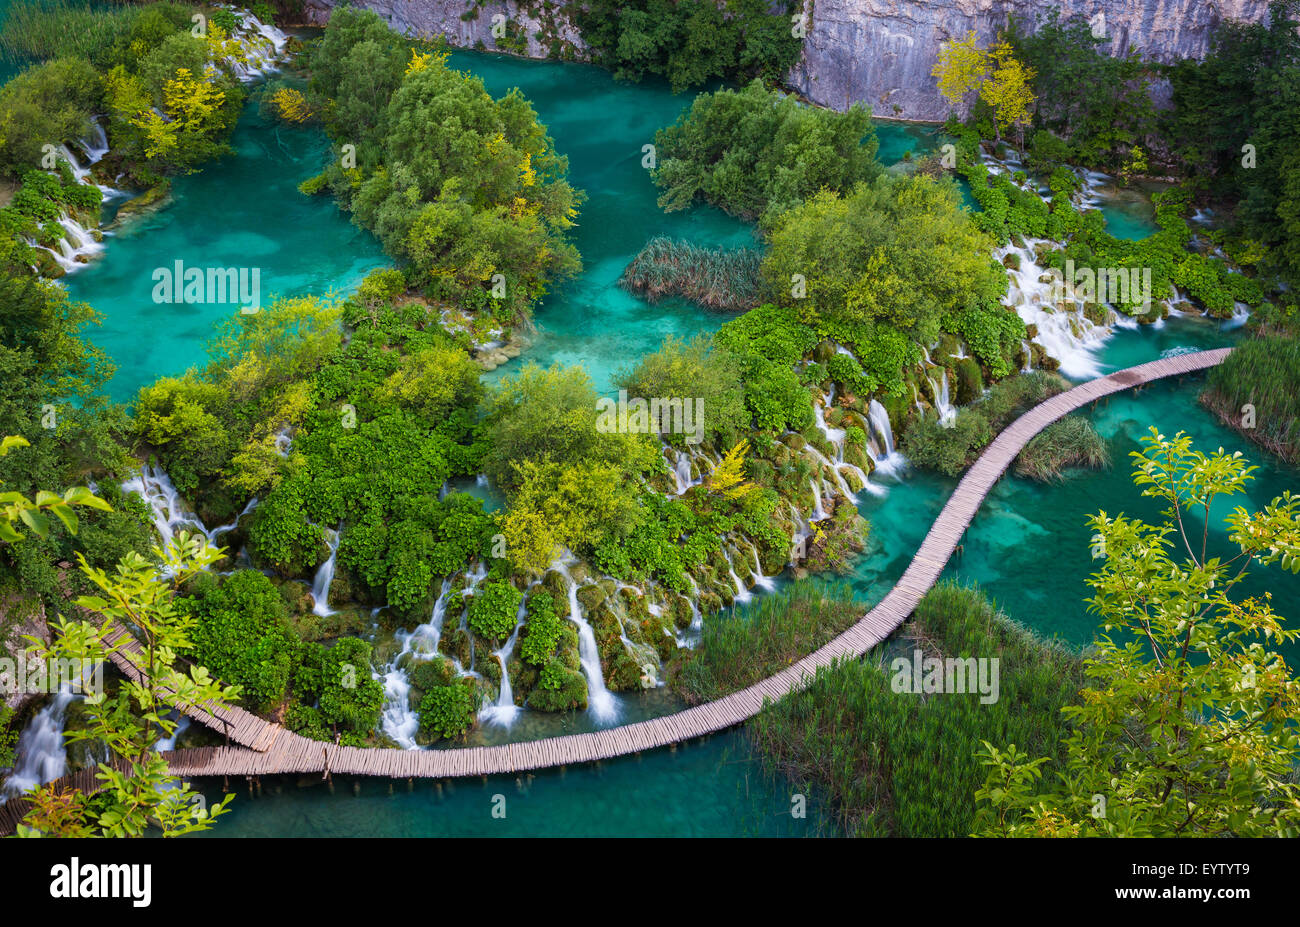 Le parc national des Lacs de Plitvice est l'un des plus anciens parcs nationaux du sud-est de l'Europe et le plus grand parc national en Croatie. Banque D'Images